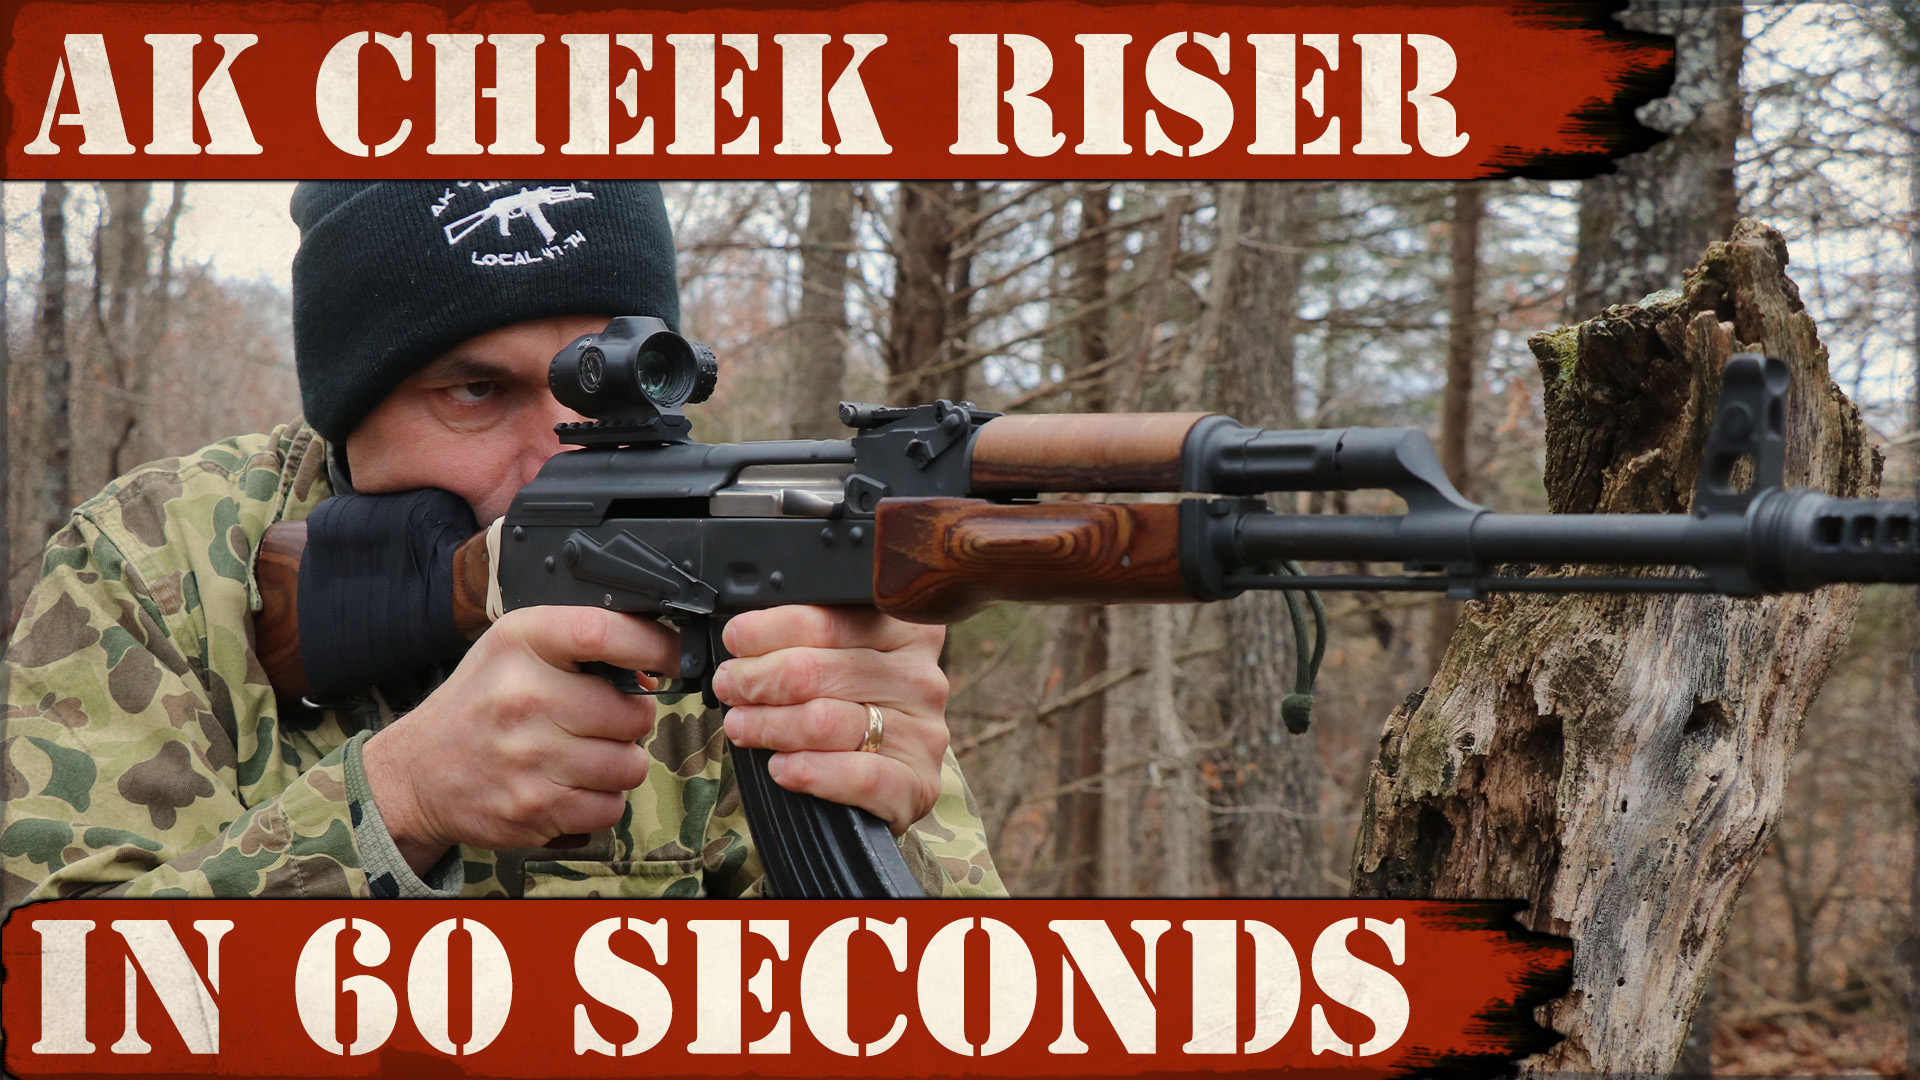 AK Cheek Riser done in 60 seconds!